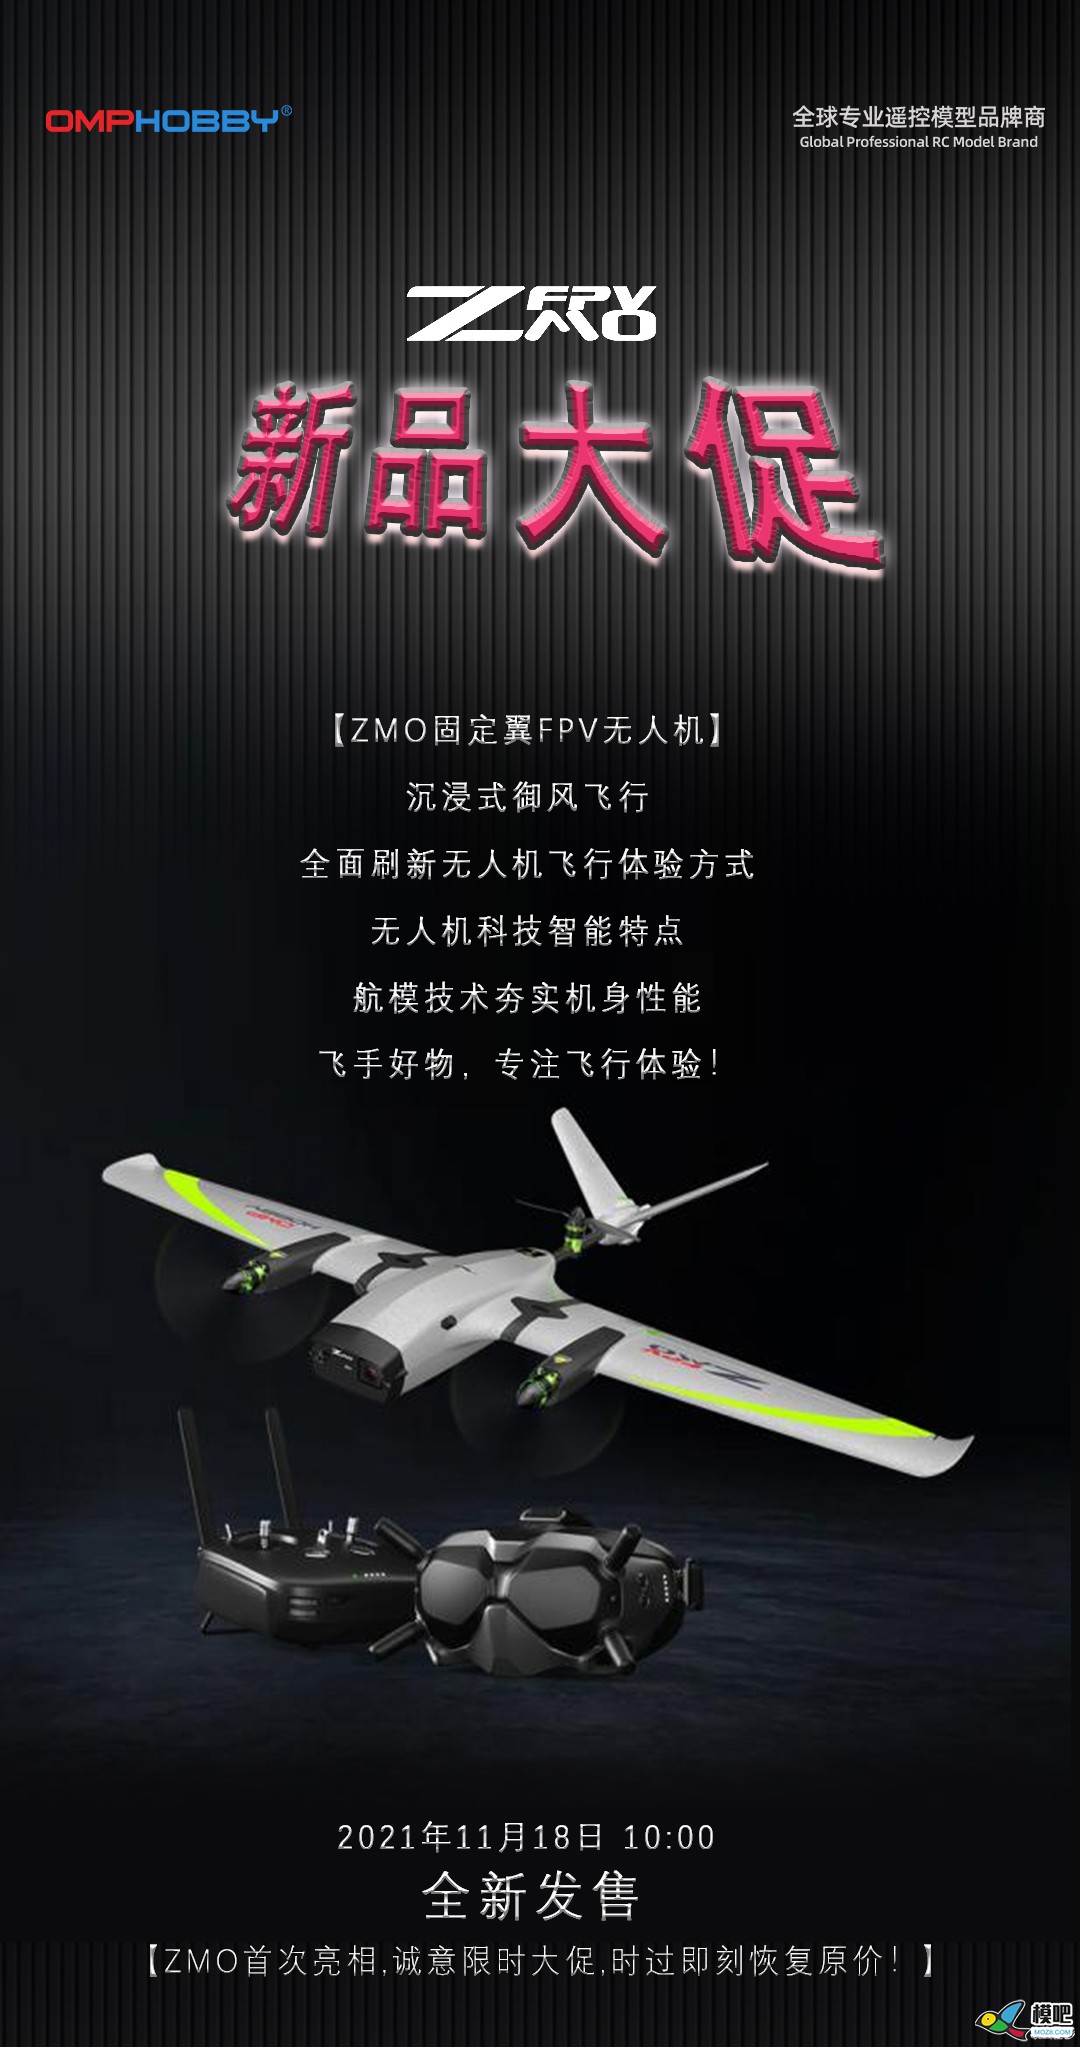 潮玩无人机-垂起固定翼FPV【ZMO】| 全新发售 无人机,航模,固定翼,飞手,飞行体验 作者:边锋领域 4800 